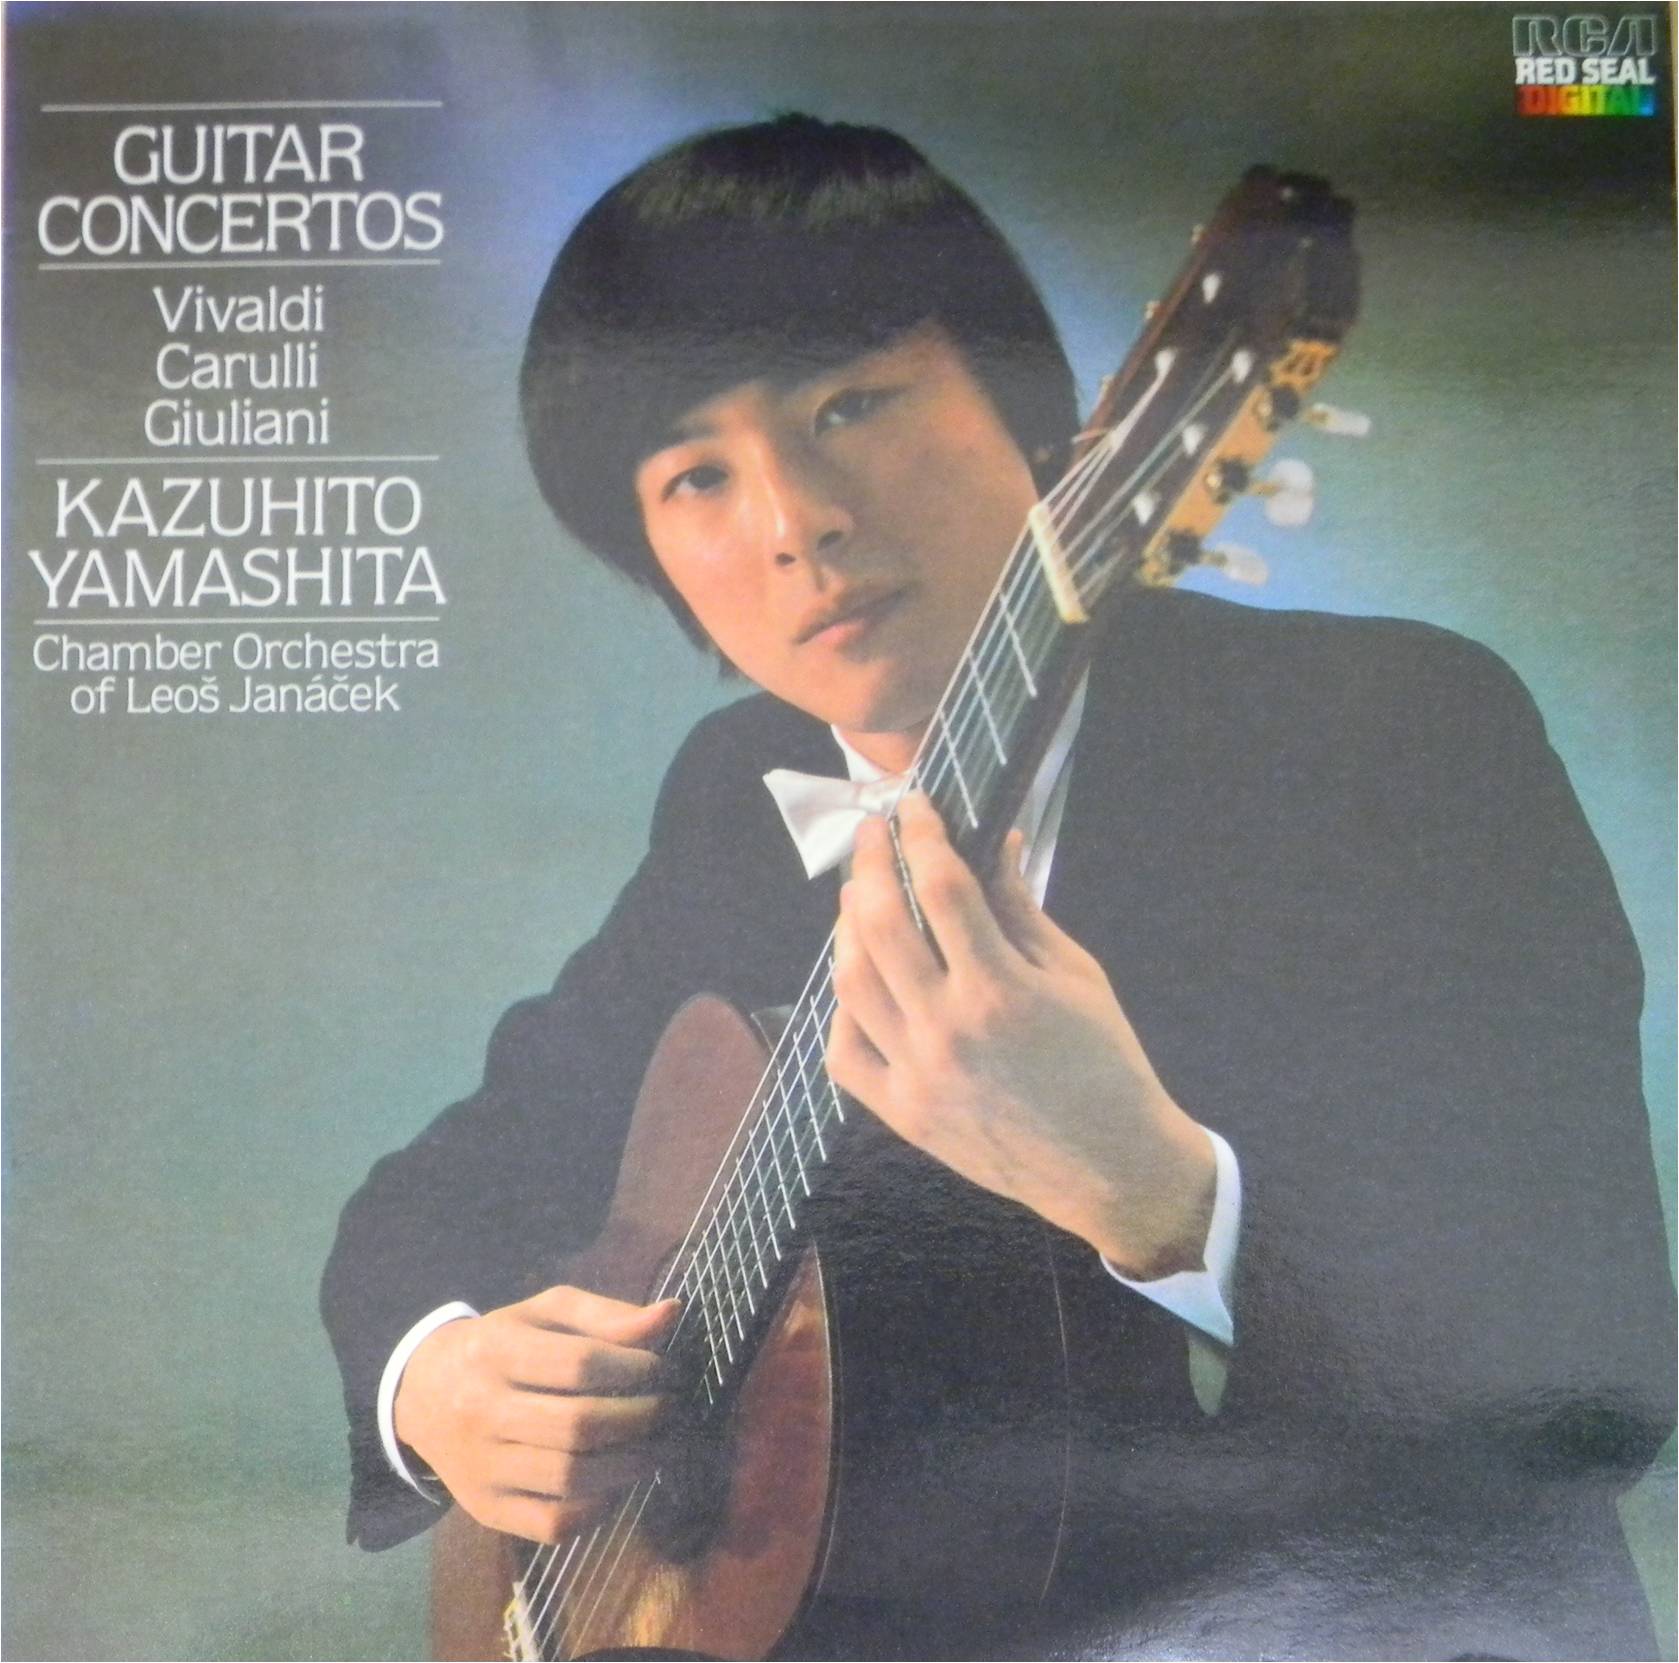 Track No.01_Kazuhito Yamashita - Guitar Concerto.jpg